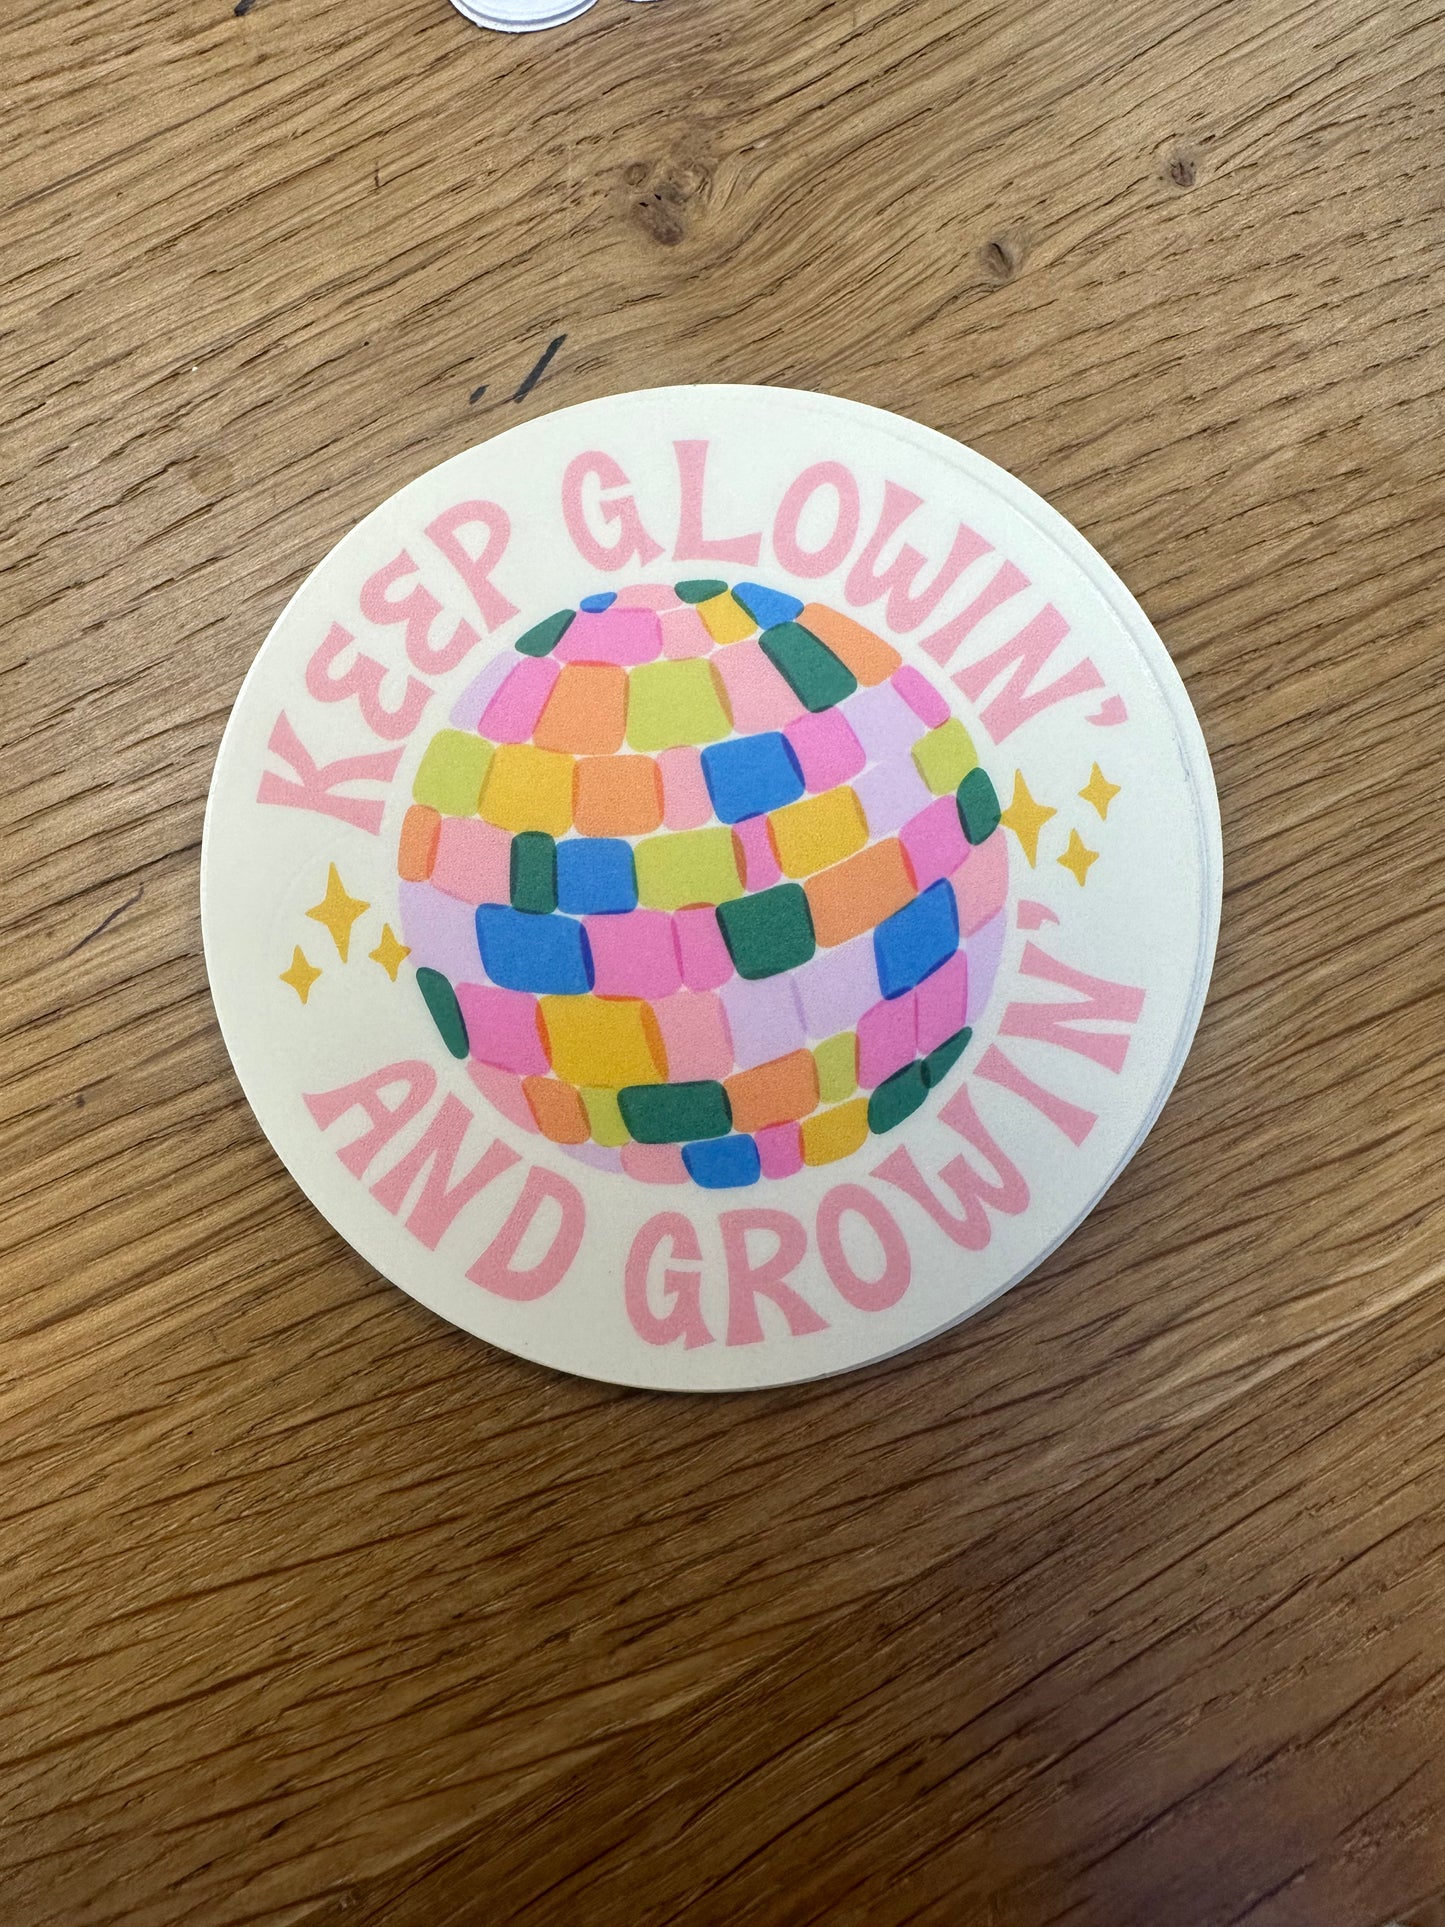 Keep Glowin and Growin Sticker